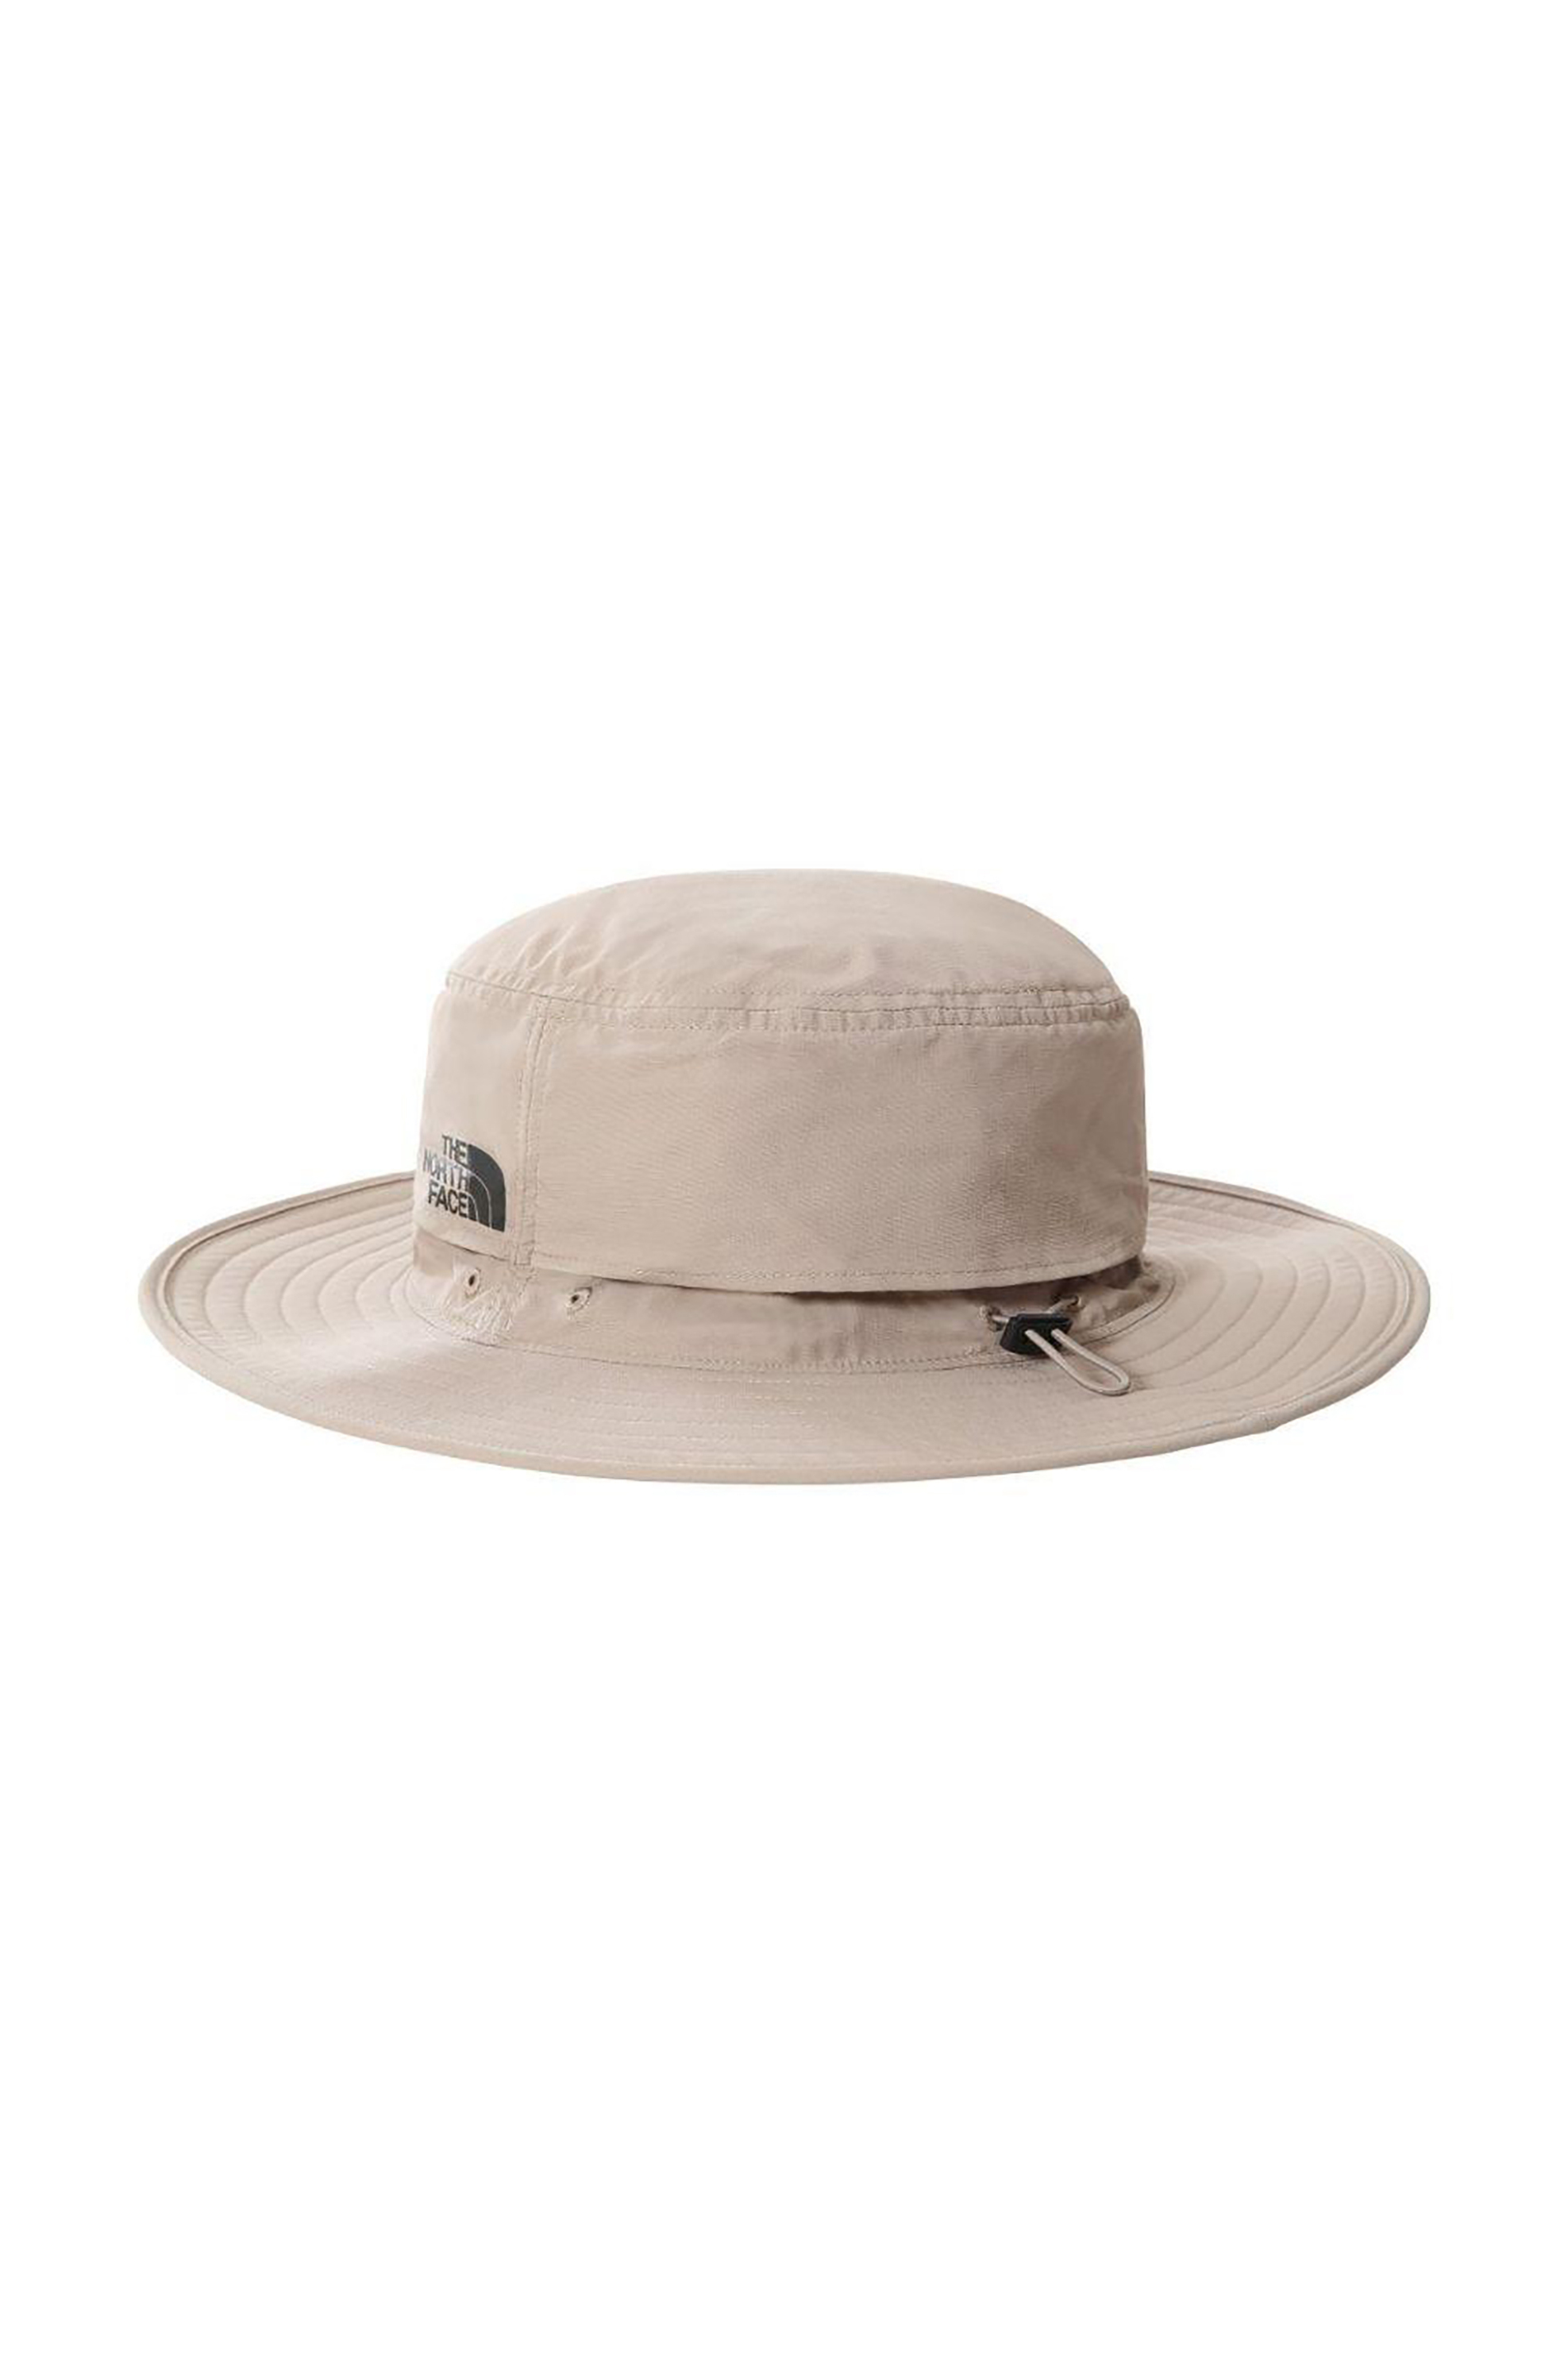 Ανδρική Μόδα > Ανδρικά Αξεσουάρ > Ανδρικά Καπέλα & Σκούφοι The North Face unisex καπέλο με logo print μονόχρωμο "Horizon Breeze Brimmer" - NF0A5FX62541 Μπεζ